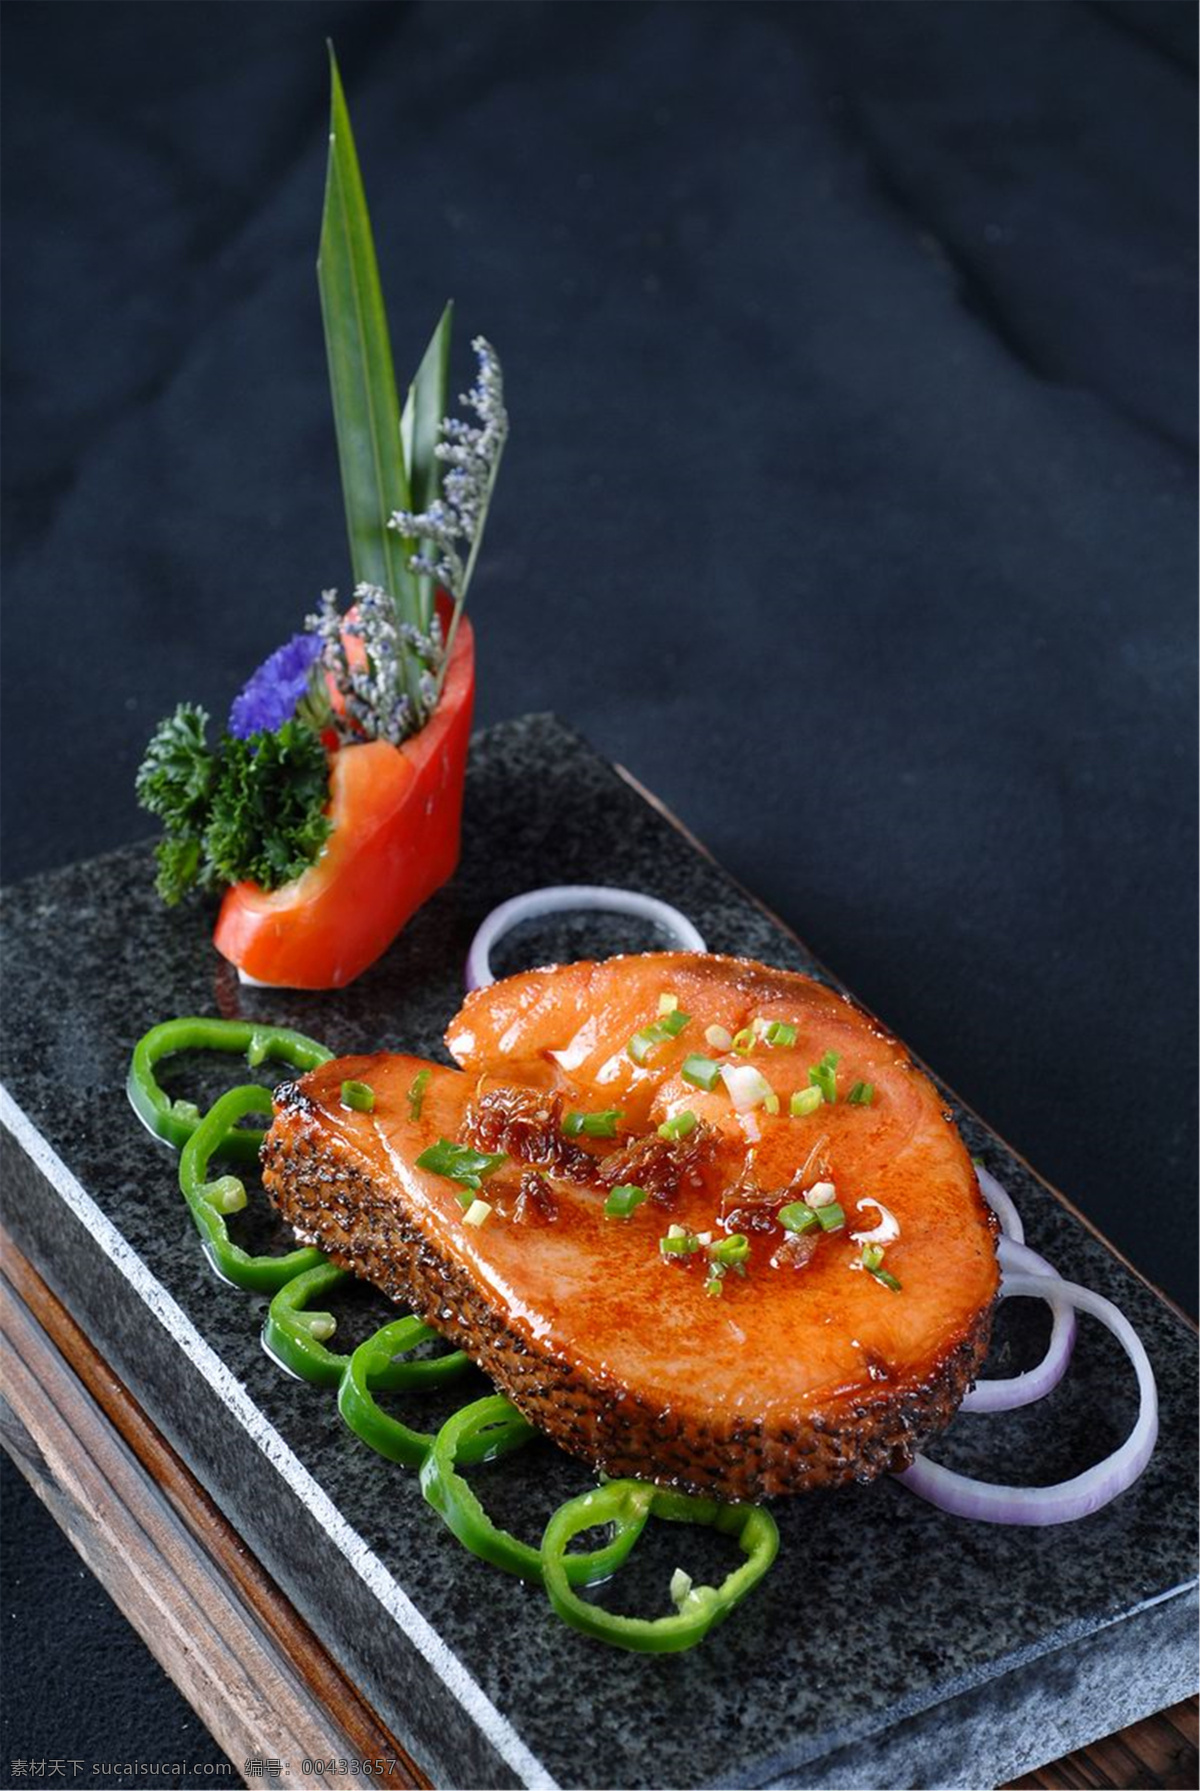 石板 银 鳕鱼 石板银鳕鱼 美食 传统美食 餐饮美食 高清菜谱用图